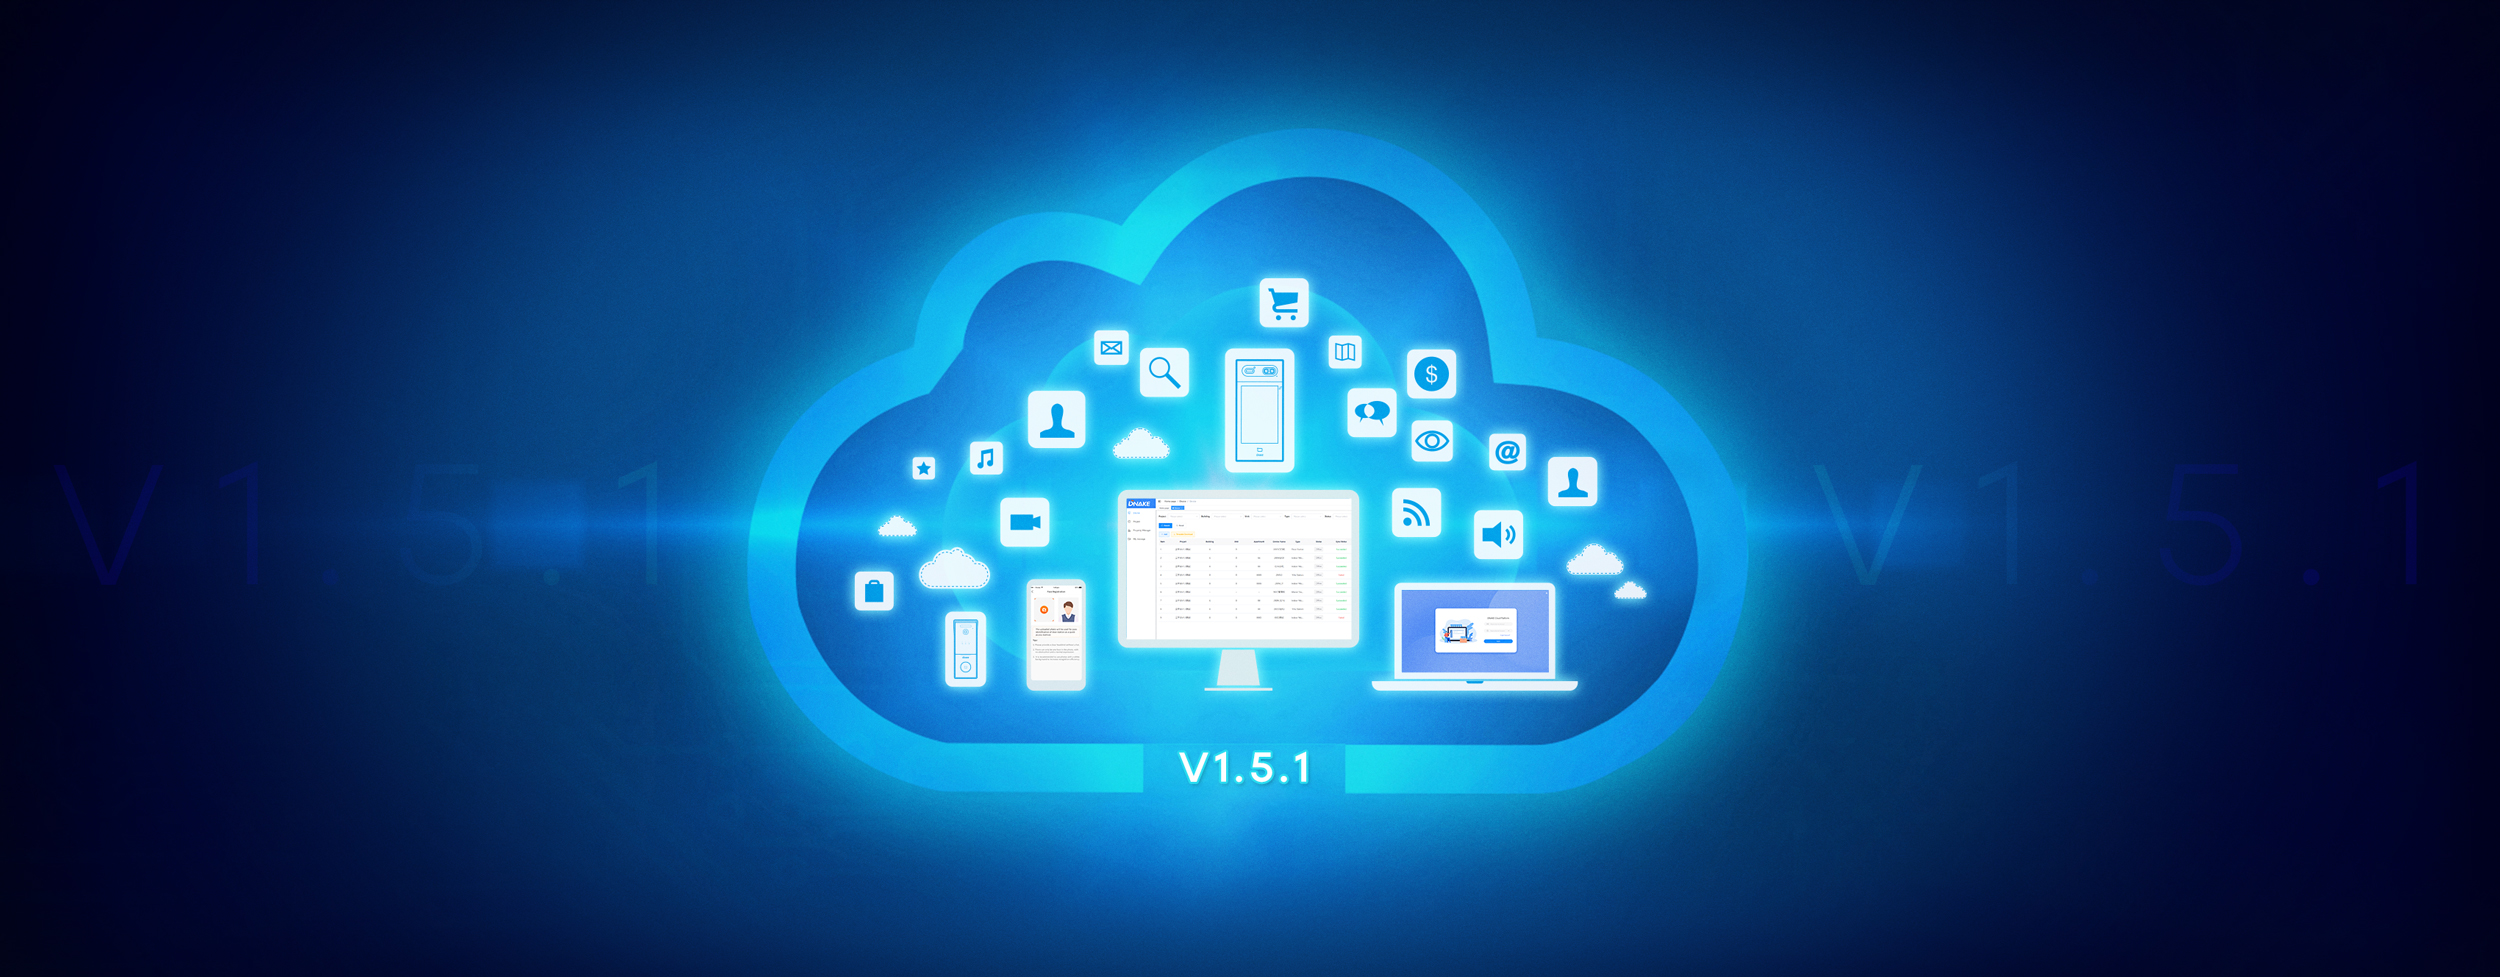 Cloud-Platform-V1.5.1 Sepanduk